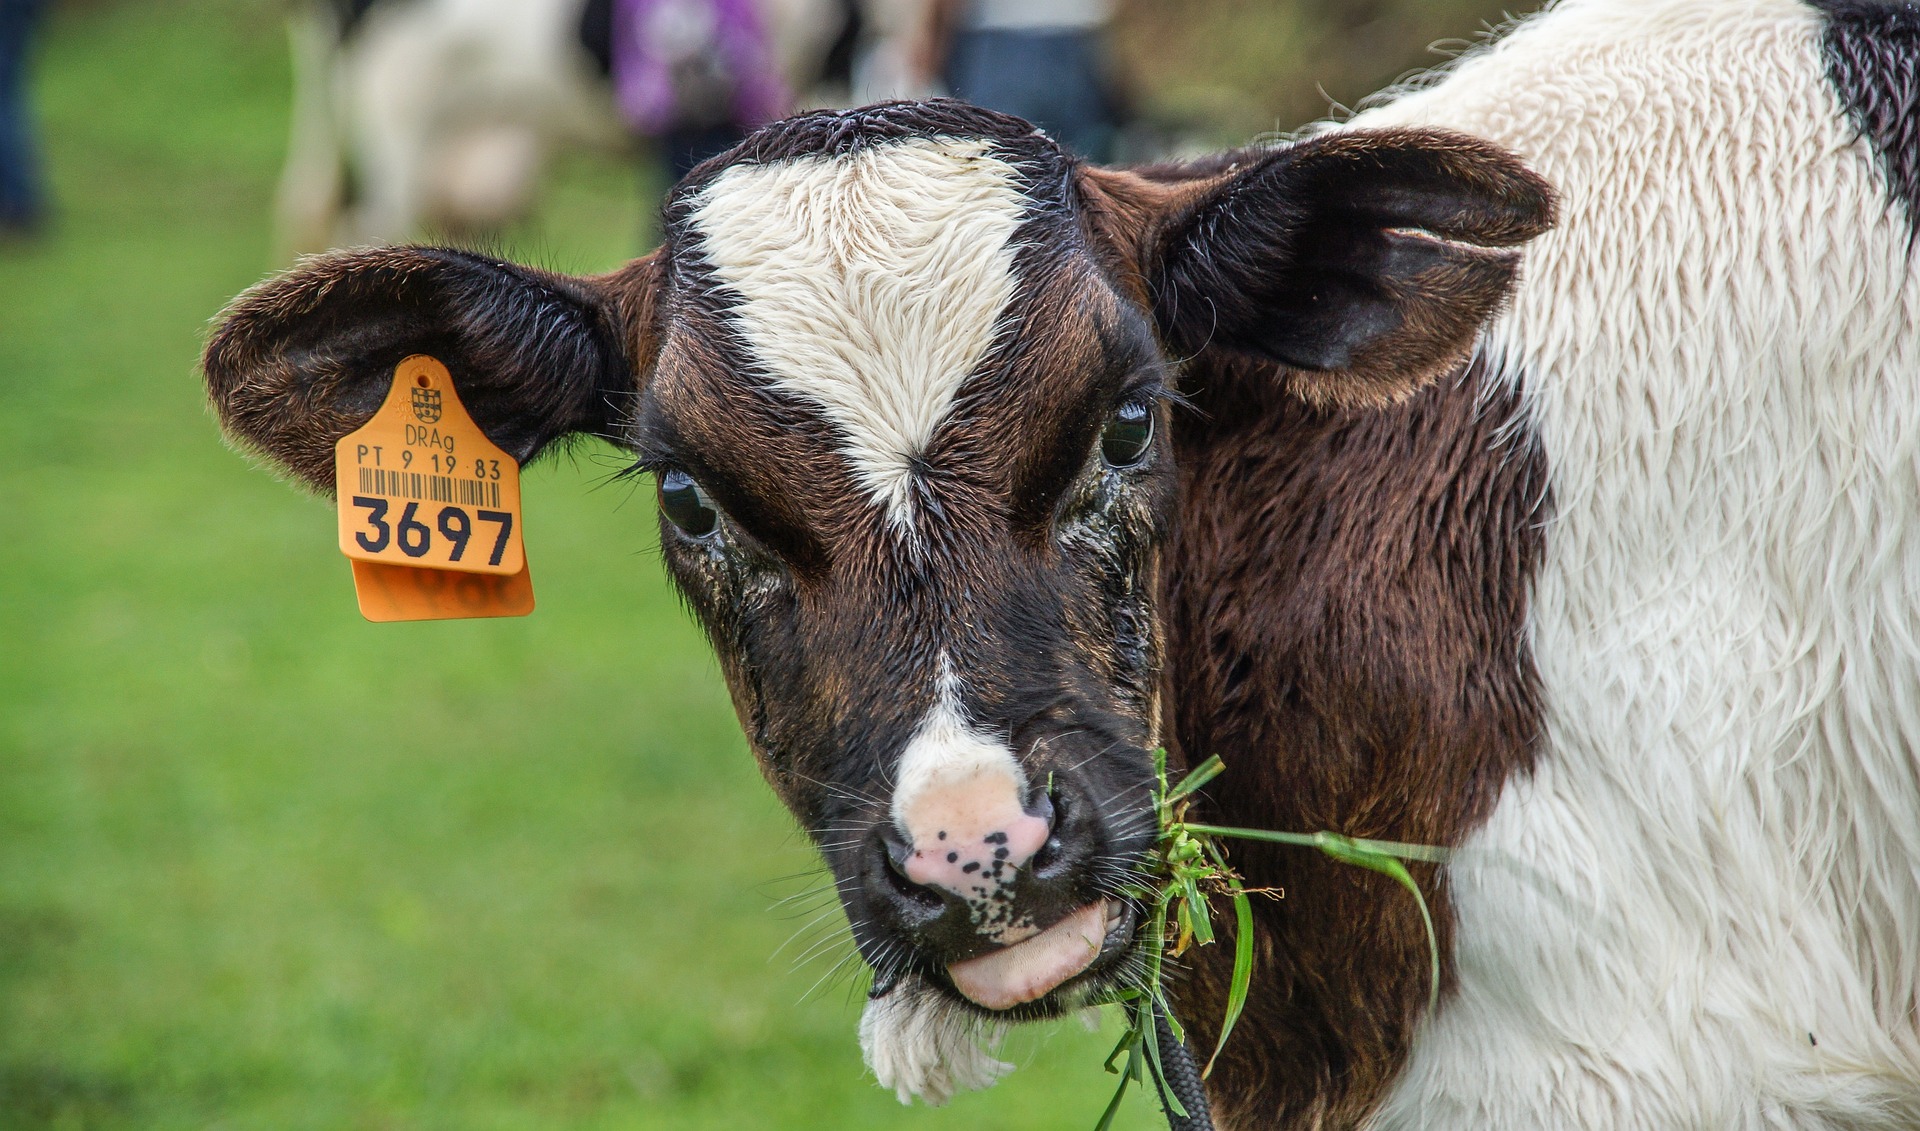 Из-за бескормицы дохлые коровы валялись вокруг фермы в одном из хозяйств Глубокского района, где их пожирали собаки и лисы